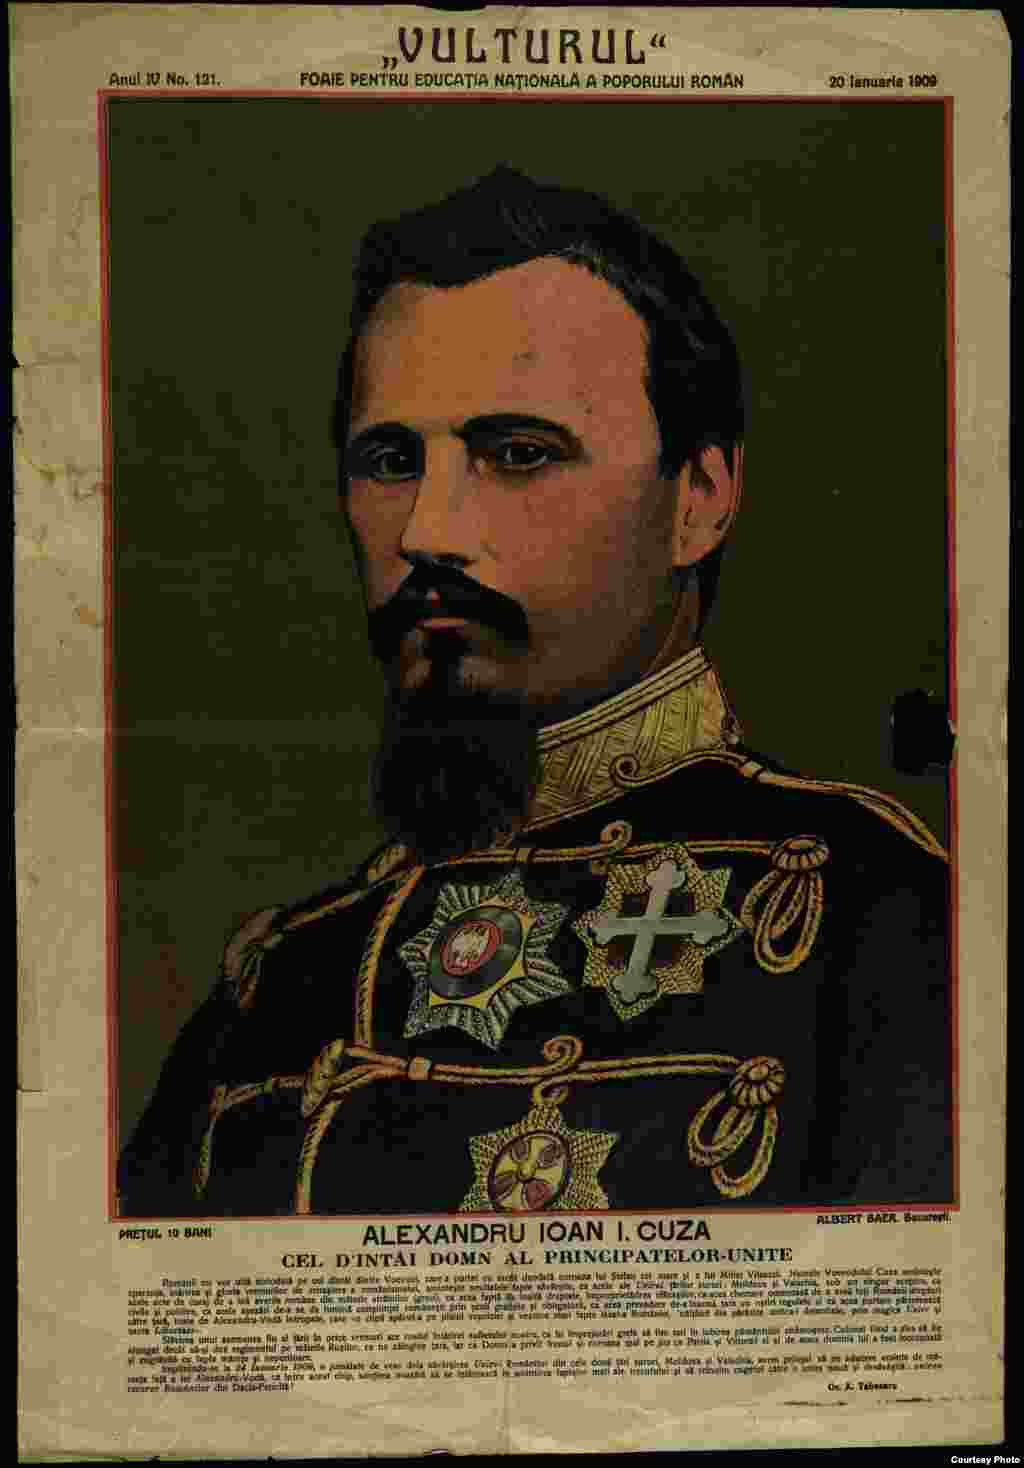 Domnitorul Alexandru Ioan Cuza a avut un rol covârșitor în așezarea temeliilor statului român modern. În plus față de dubla alegere, domnia sa a însemnat reforme esențiale. A izbutit să obțină recunoașterea Unirii personale, dar a pierdut sprijinul esențial al Franței. Abordarea radicală a unor măsuri, camarila coruptă, dar și tentativa de a întemeia o dinastie, au dus la înlăturarea sa, la 11 februarie 1866. Demonizați de propaganda comunistă, autorii loviturii de palat contra domnitorului Cuza, au reluat însă lista cererilor întocmite de Adunările Ad-Hoc și au adus în fruntea României, un principe dintr-o dinastie occidentală.&nbsp; Pe scurt, 1848 și 1878, urmându-și cu încăpățânare agenda, elitele politice ale vremii au obținut Unirea, integrarea în Europa monarhică&nbsp;prin Carol de Hohenzollern și Independența. În 30 de ani au pus România pe hartă, la propriu.&nbsp;